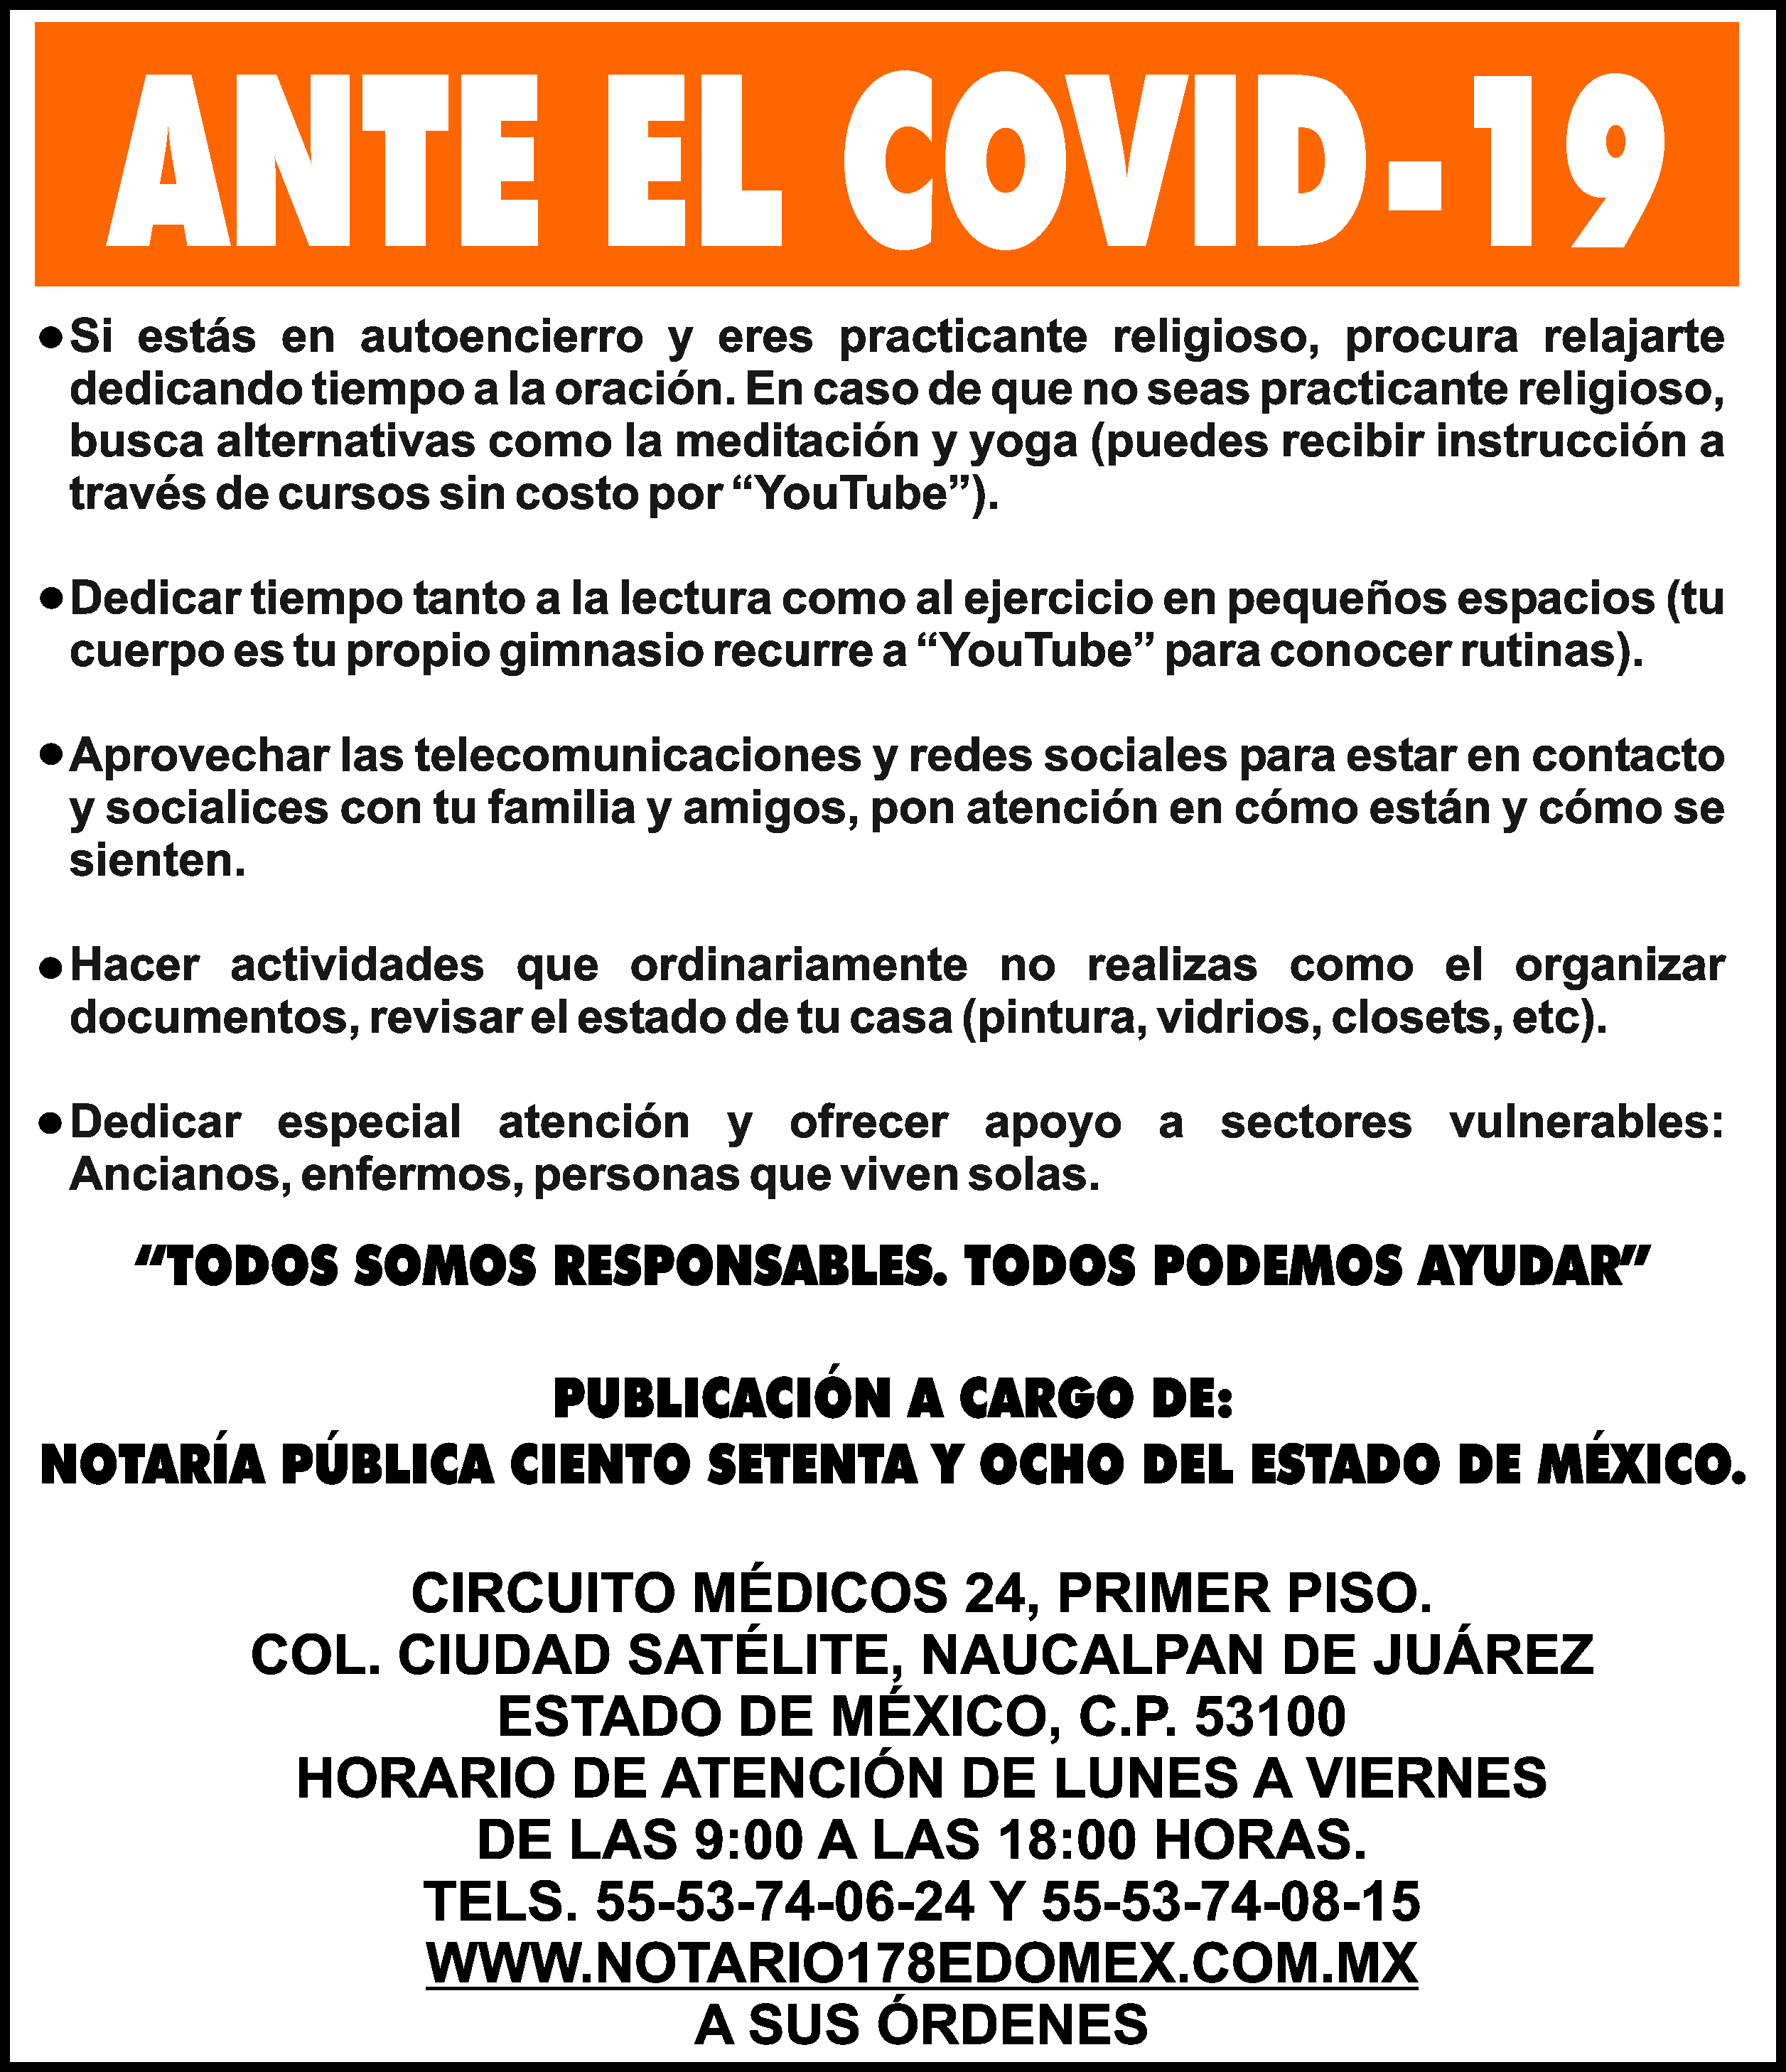 ANTE EL COVID-19

&BULL;SI